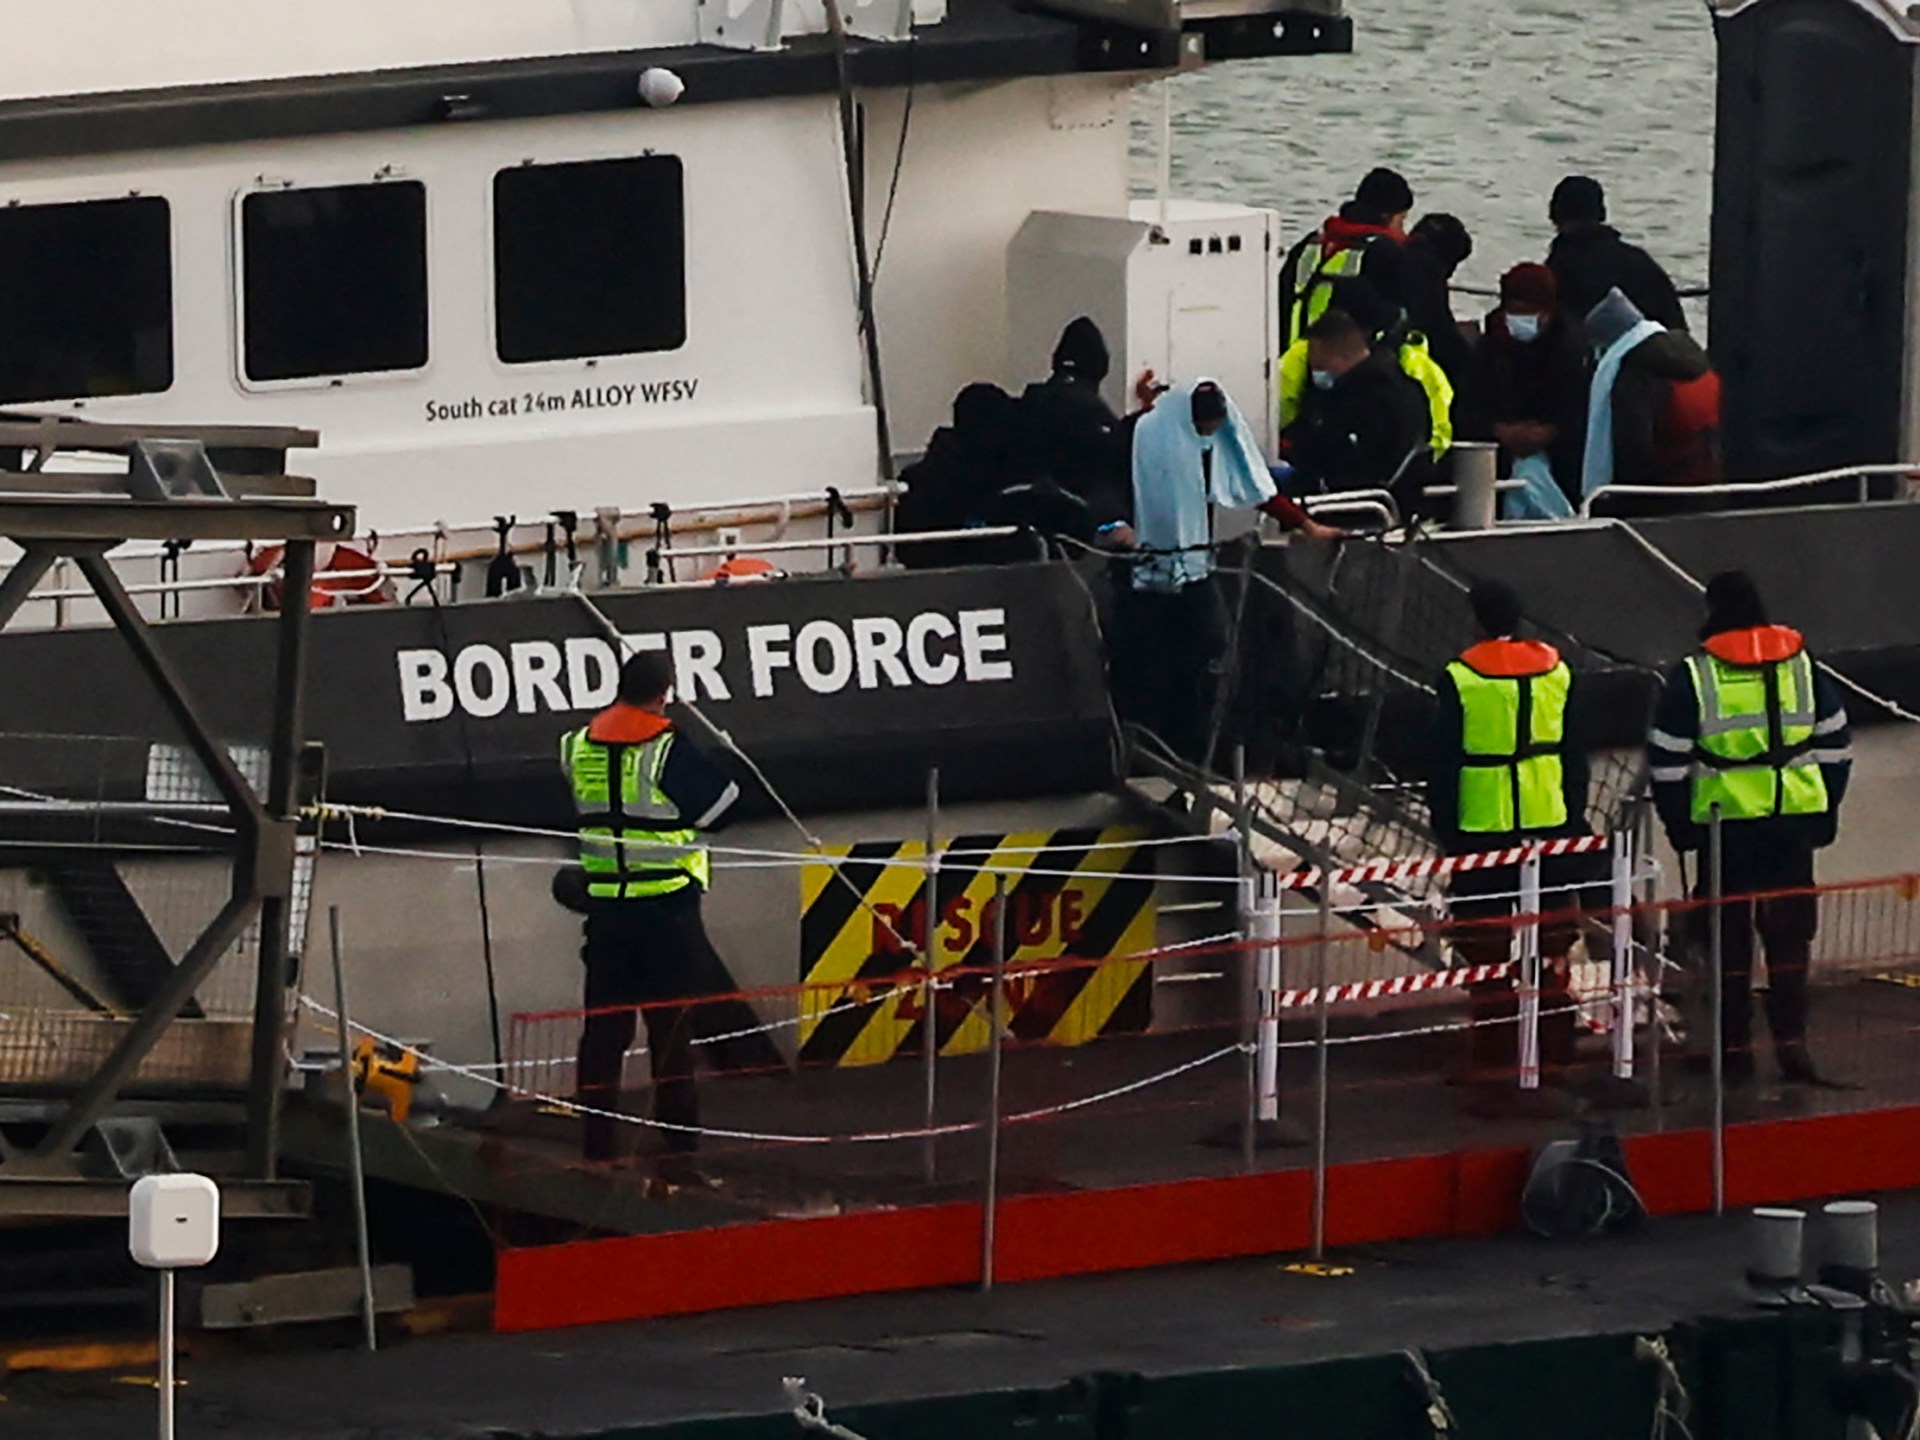 Didžioji Britanija ruošiasi atskleisti naujas galias „sustabdyti laivus“ |  Pabėgėlių naujienos